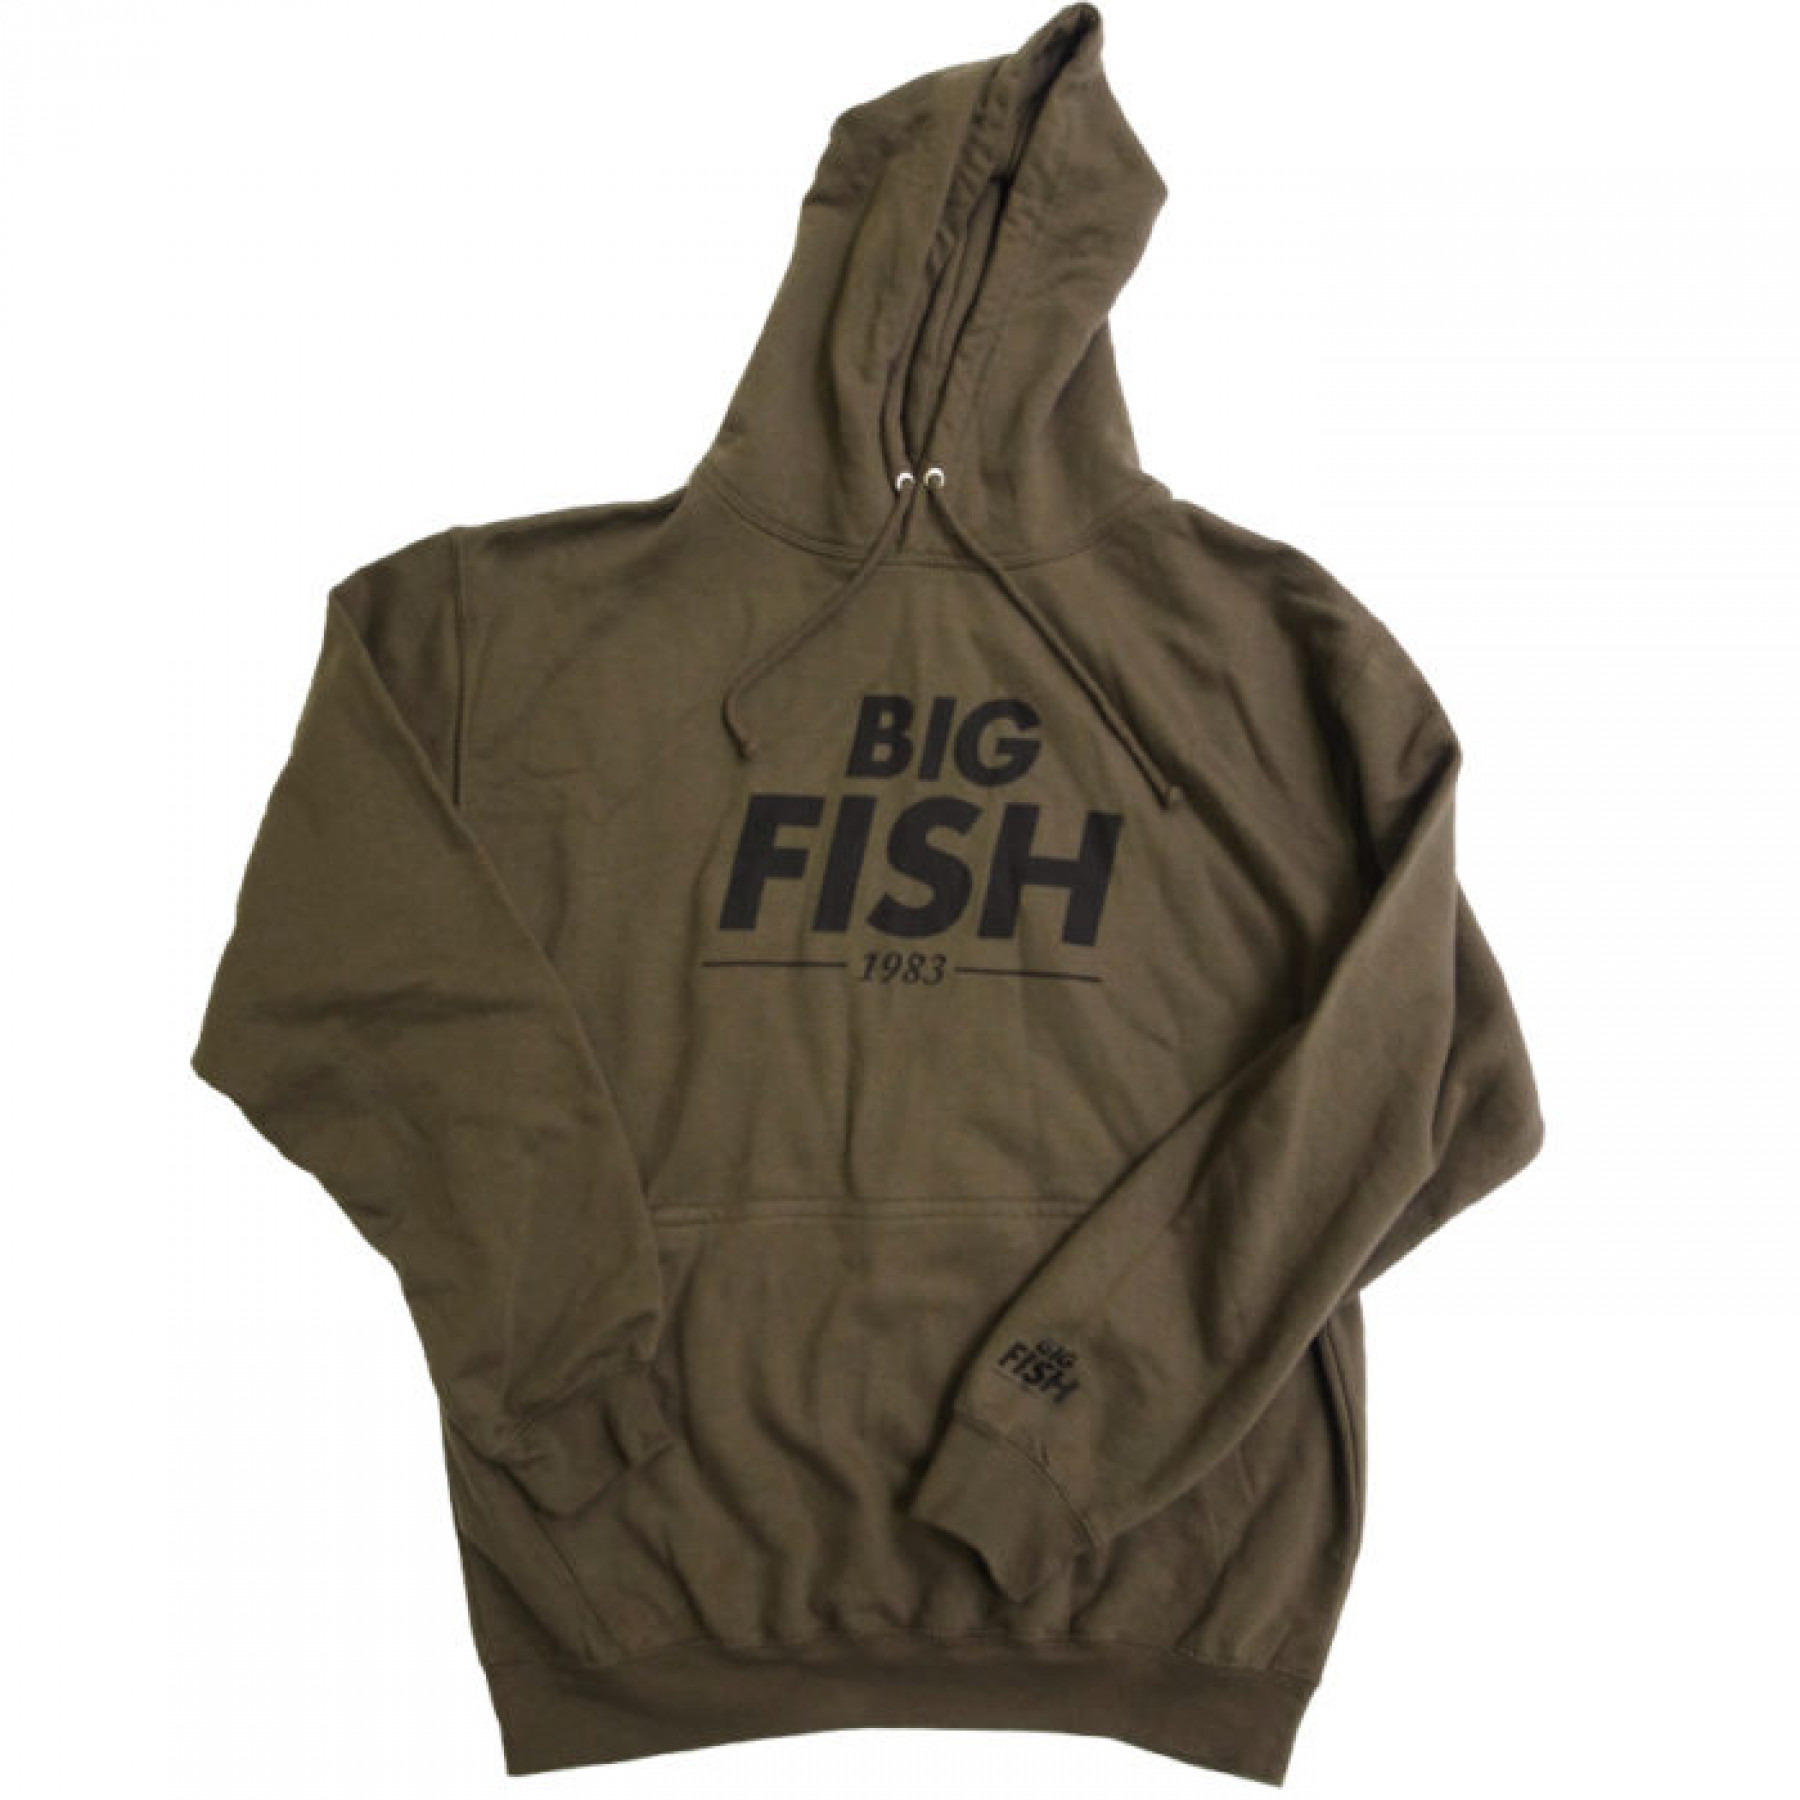 Sudadera con capucha y logotipo Big Fish